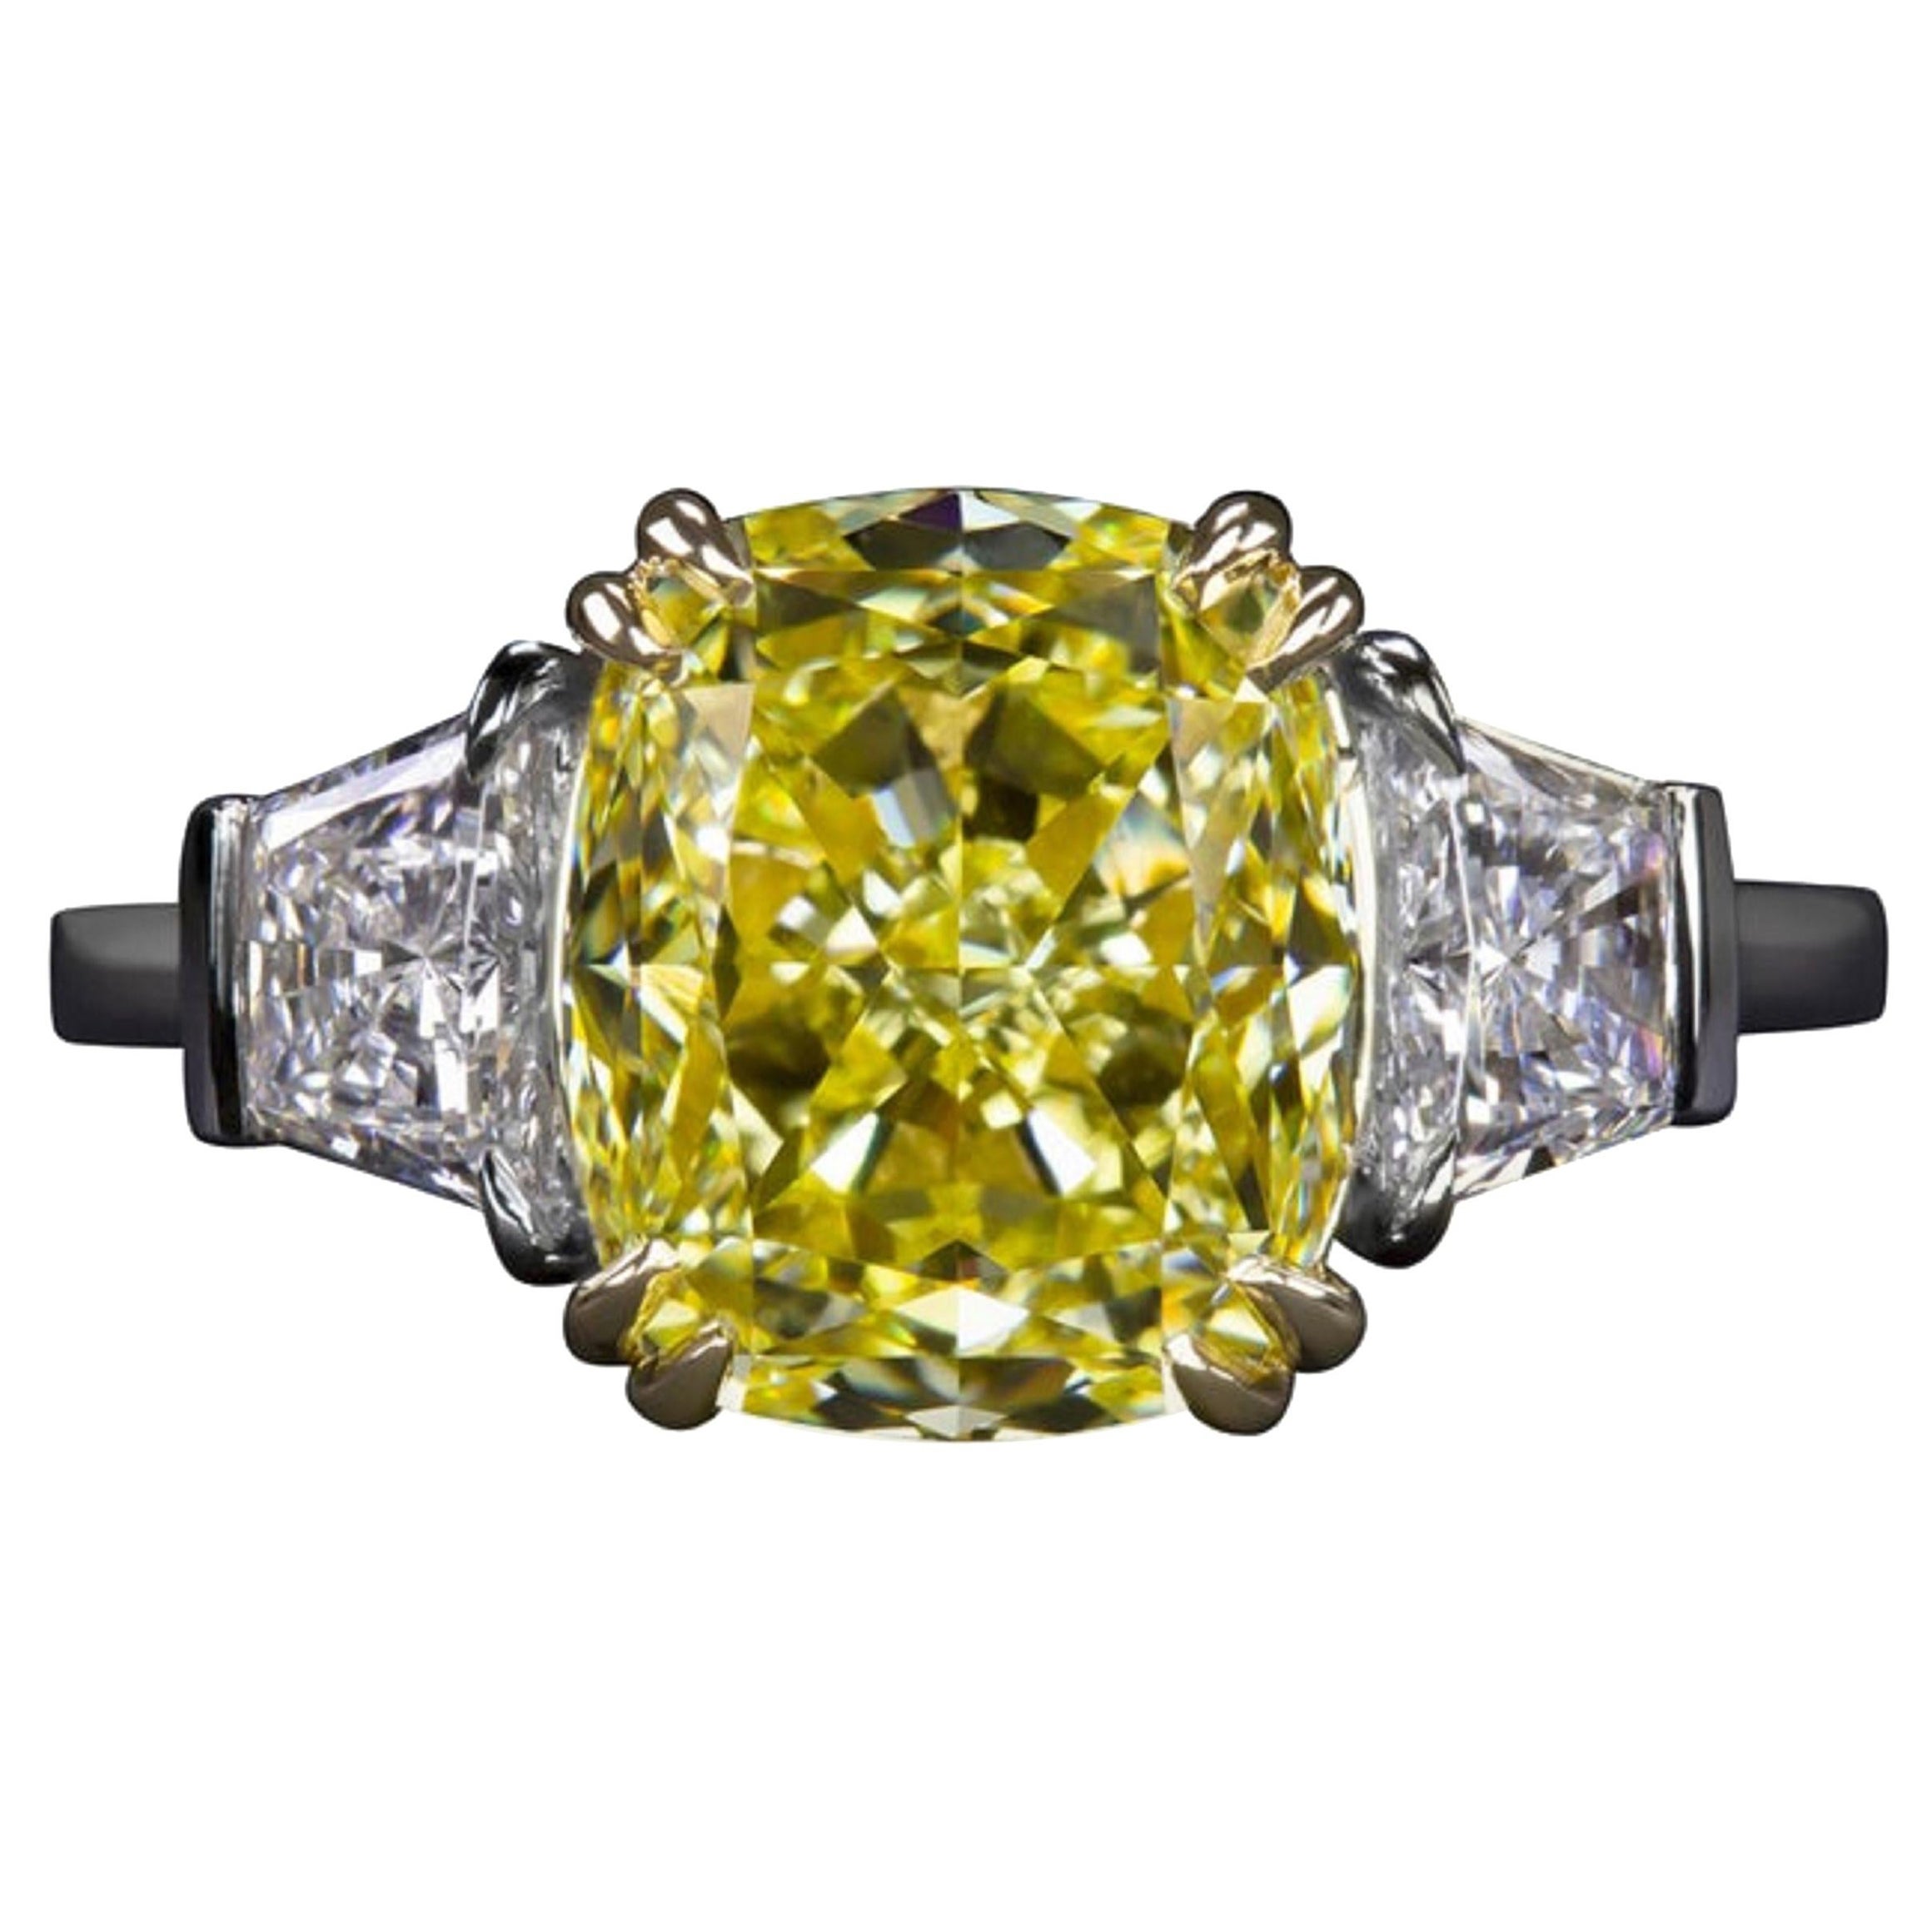 Bague à diamant coussin certifié GIA de 5 carats de couleur jaune clair fantaisie